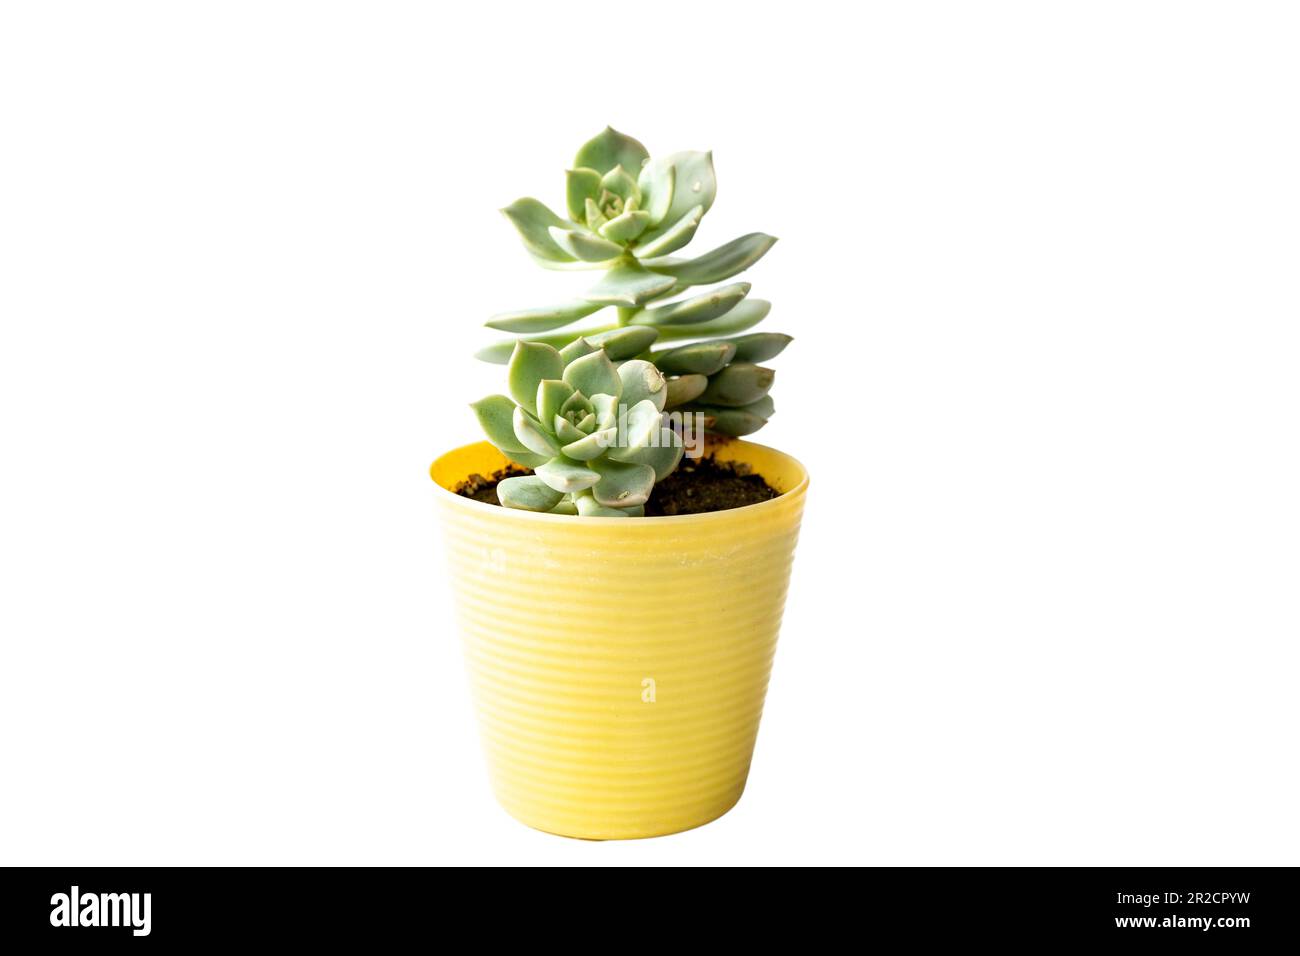 Echeveria plante succulente dans un pot en plastique jaune Banque D'Images